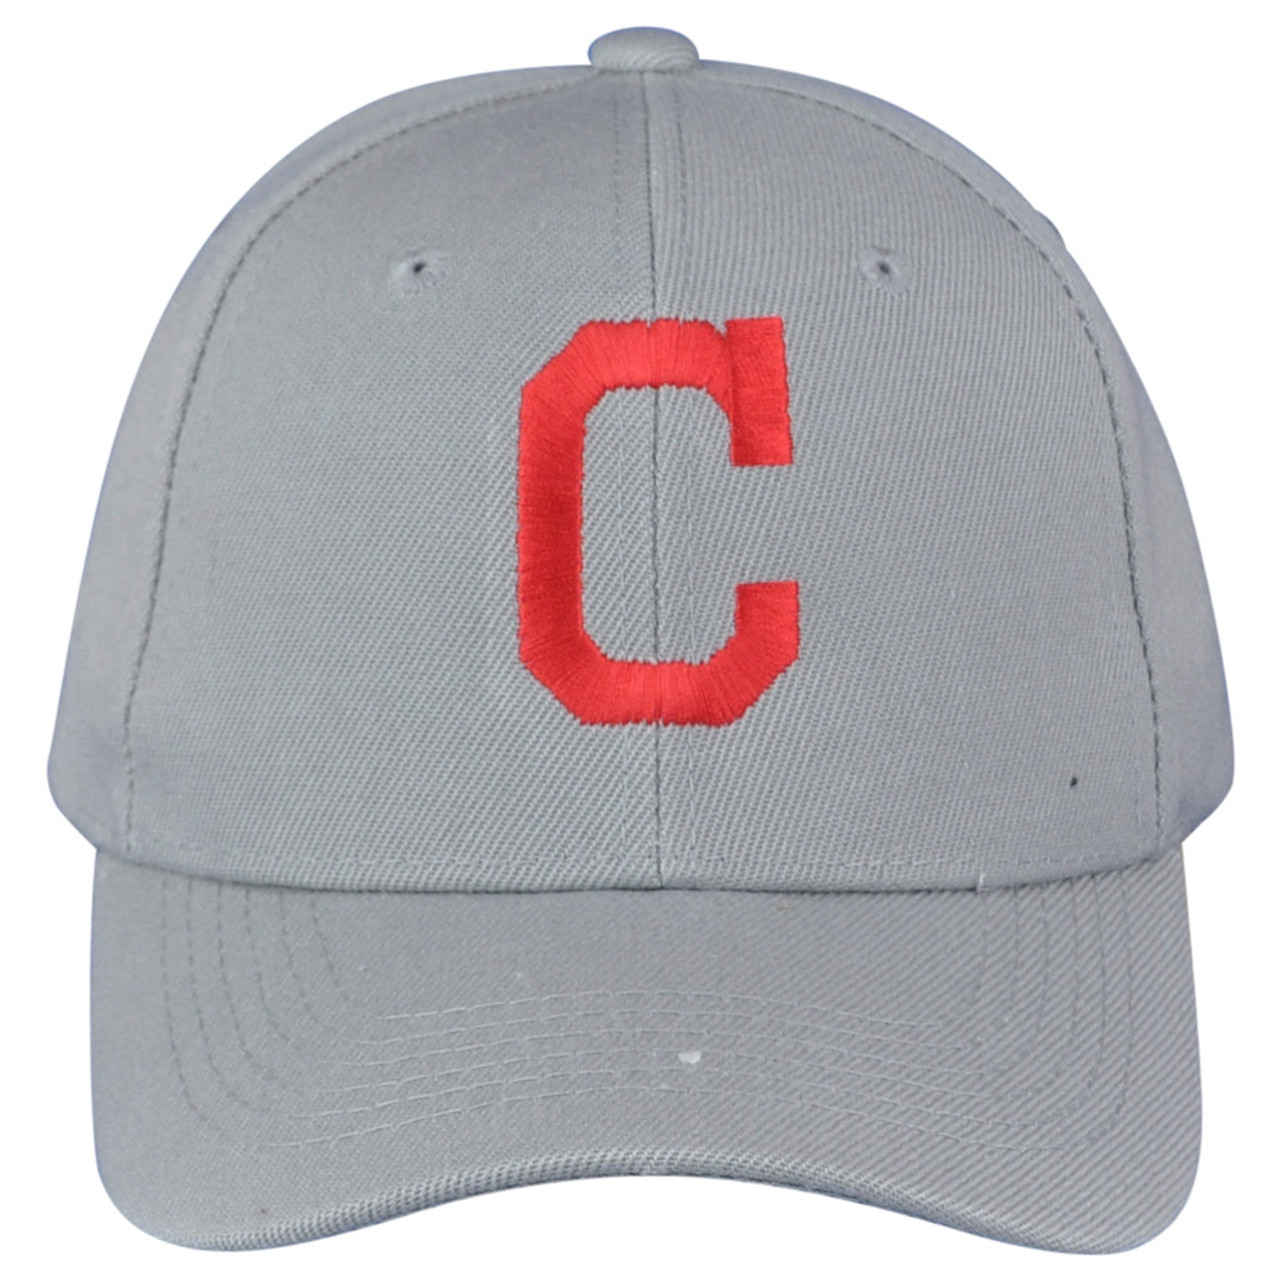 Cleveland Indians MLB Fan Shop